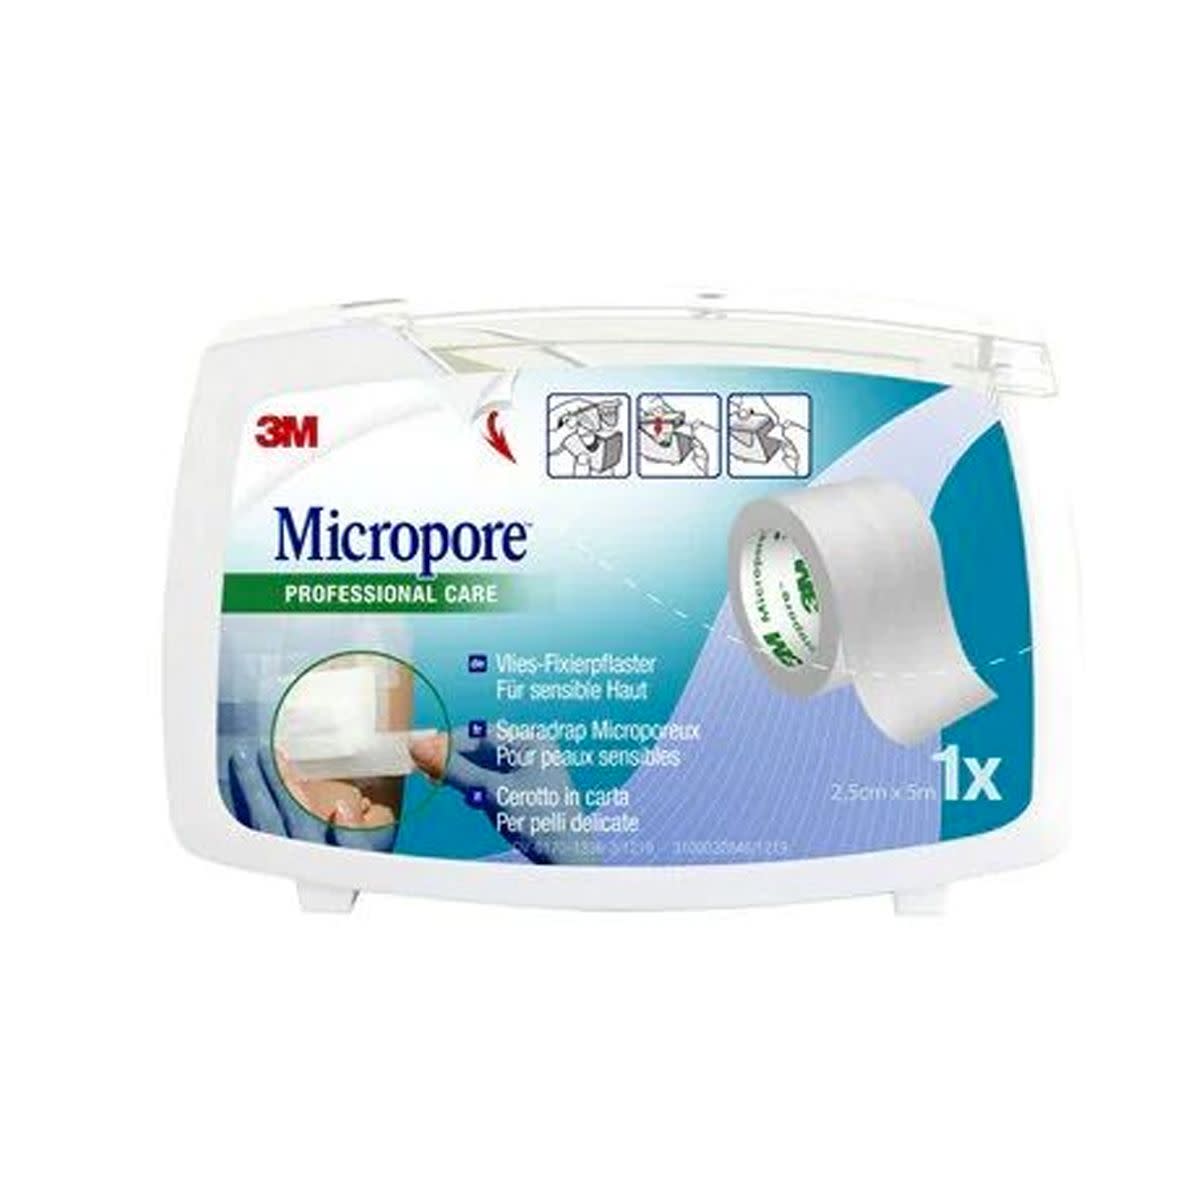 980486474 - 3M Micropore Surgical Tape Cerotto Rocchetto 25 x 500cm - 4736425_2.jpg